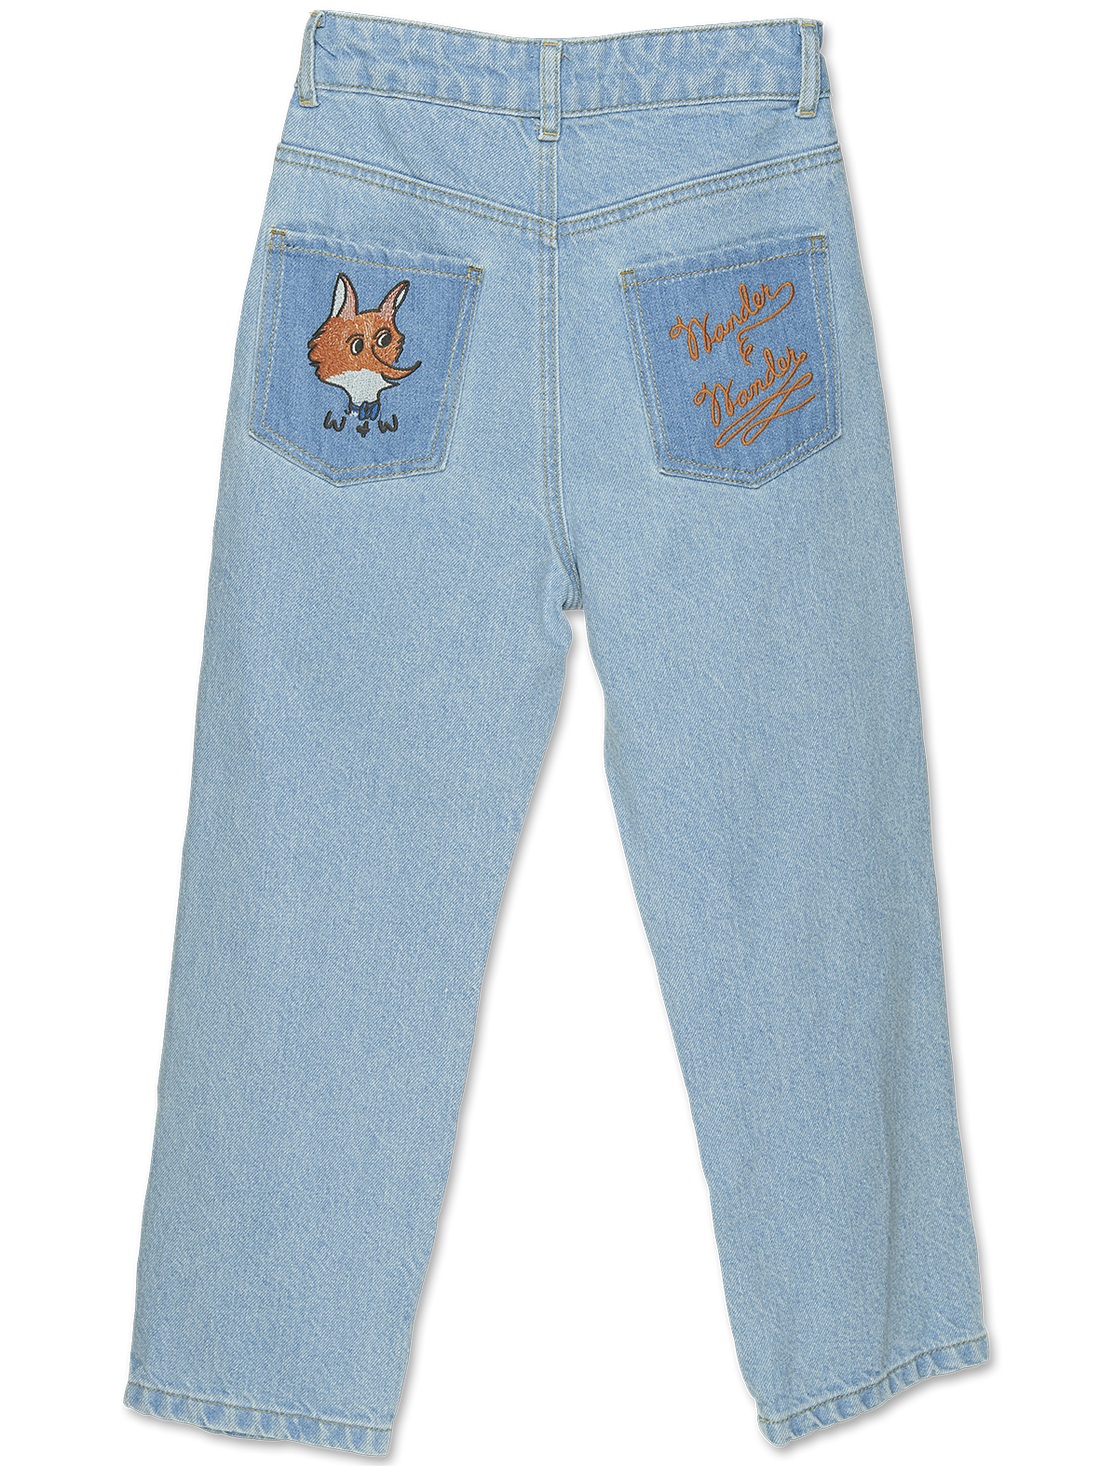 Wander & Wonder - fox jeans - denim